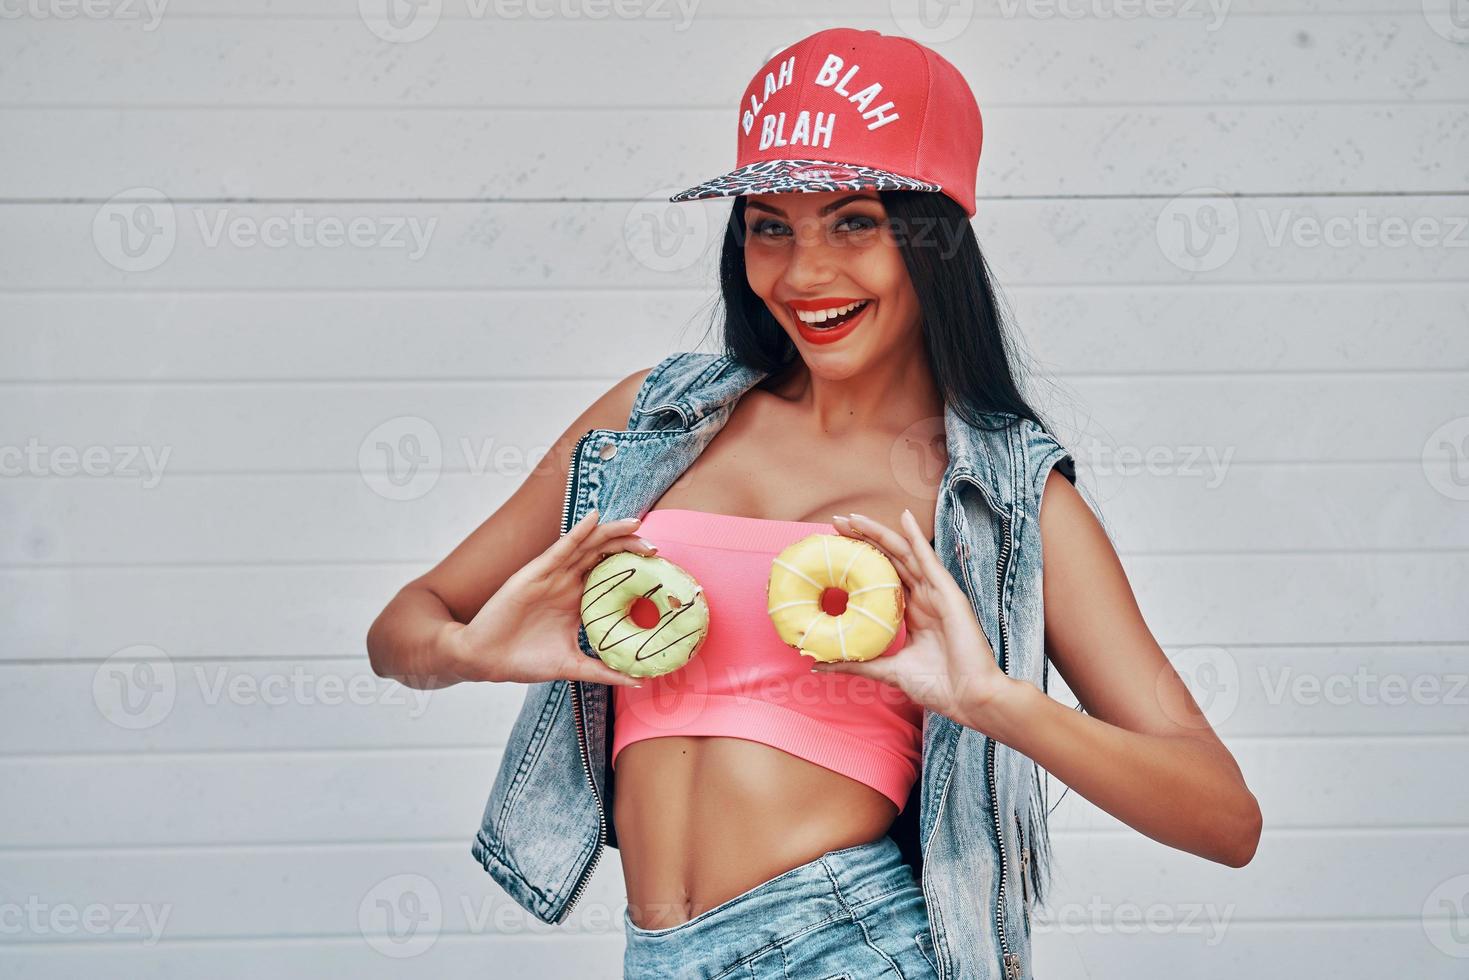 ser joven significa divertirse. mujeres jóvenes juguetonas sosteniendo donuts contra su pecho y sonriendo mientras están de pie contra el fondo blanco foto